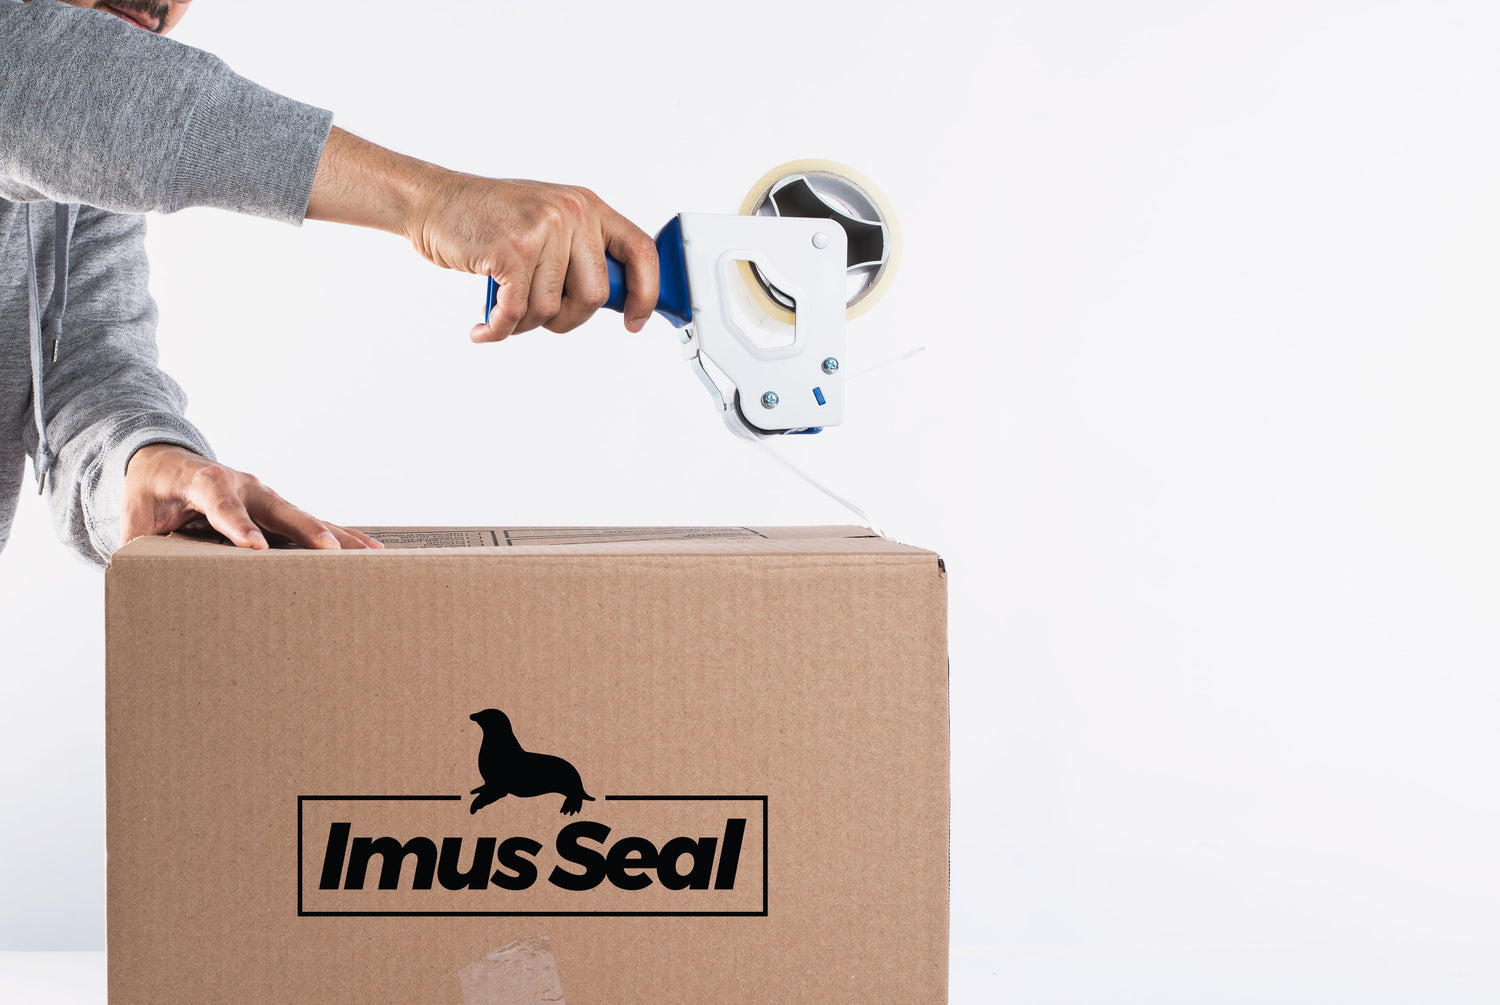 Imus Seal box packing